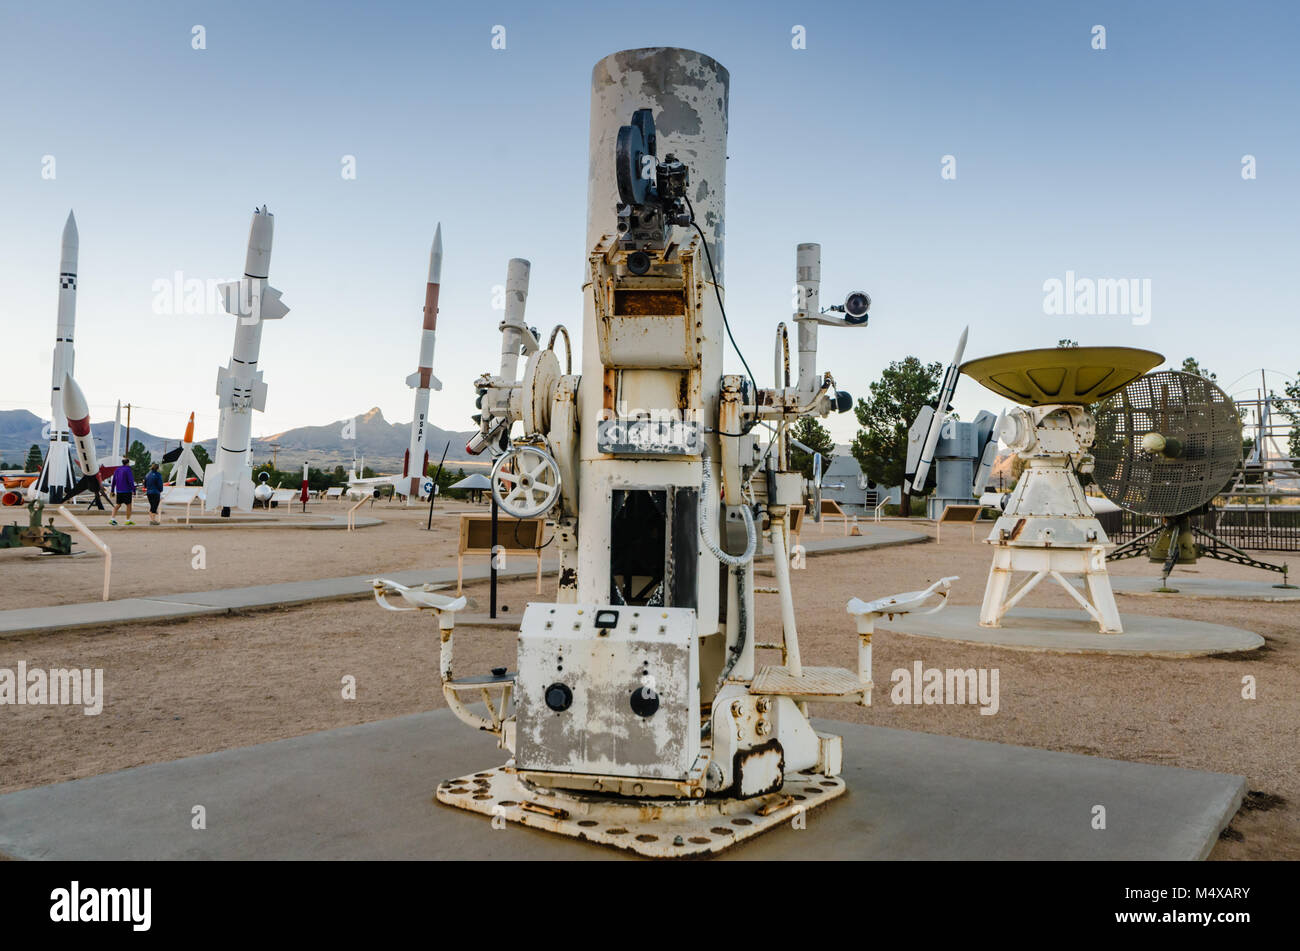 La Igor è un telescopio di tracking progettato per fornire documentazioni fotografiche di le prestazioni del missile, come atteggiamento, intercettare miss-distanza. Foto Stock